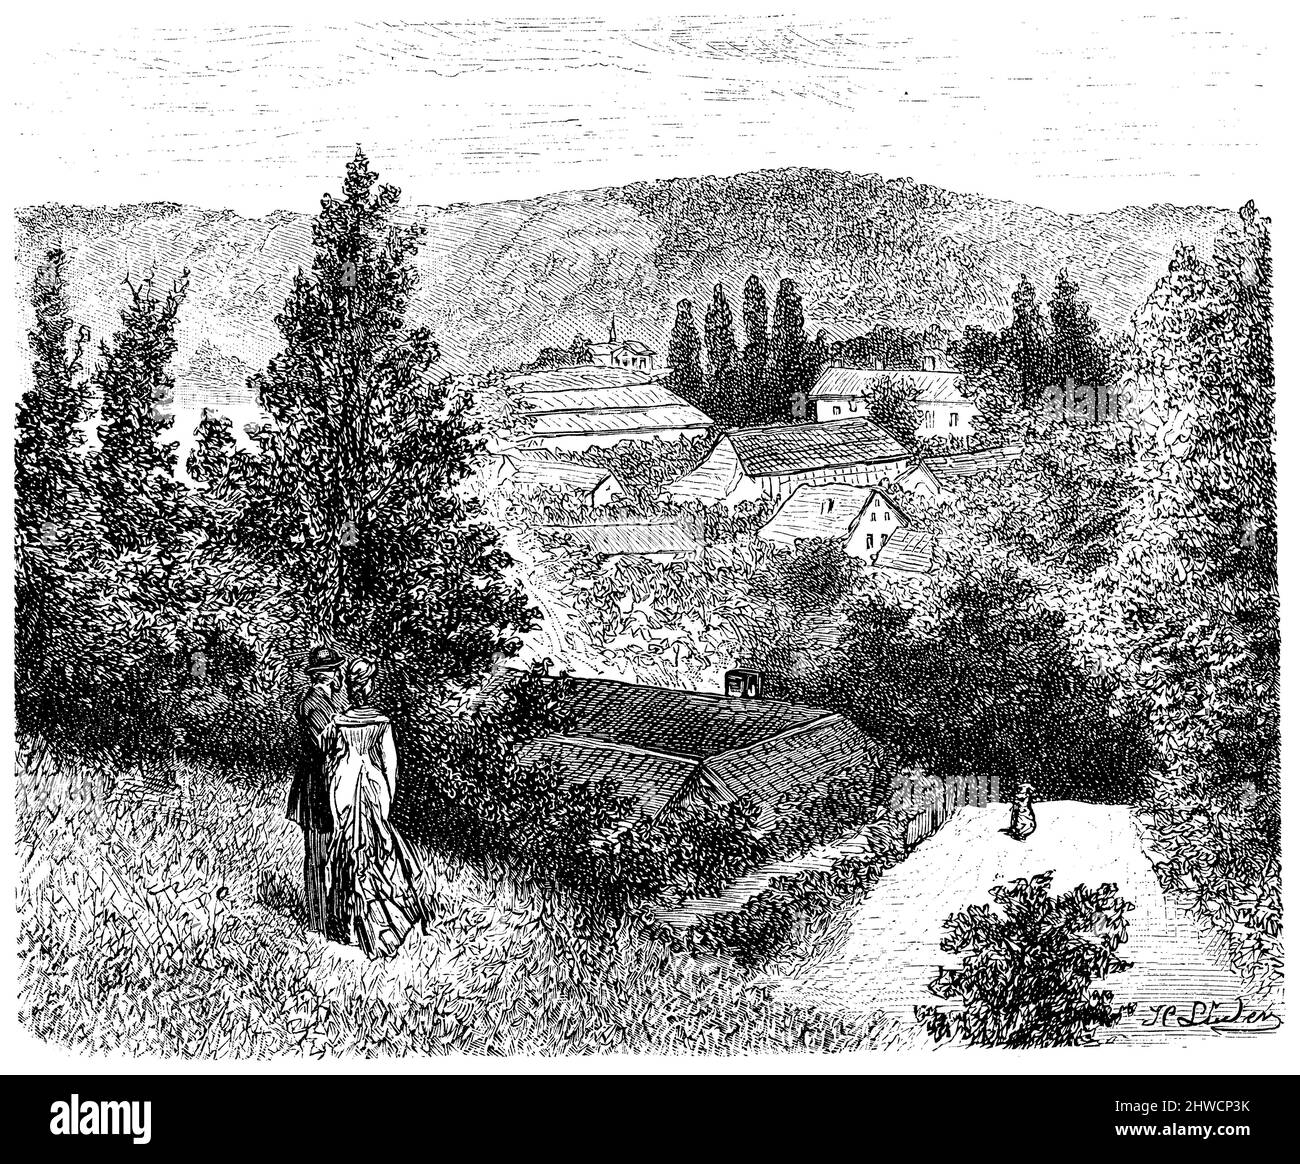 Märkische Schweiz near Buckow, Allemagne, , H. Lüder (Geographie Buch, 1885), Märkische Schweiz bei Buckow, Deutschland, Märkische Schweiz, Allemagne Stockfoto